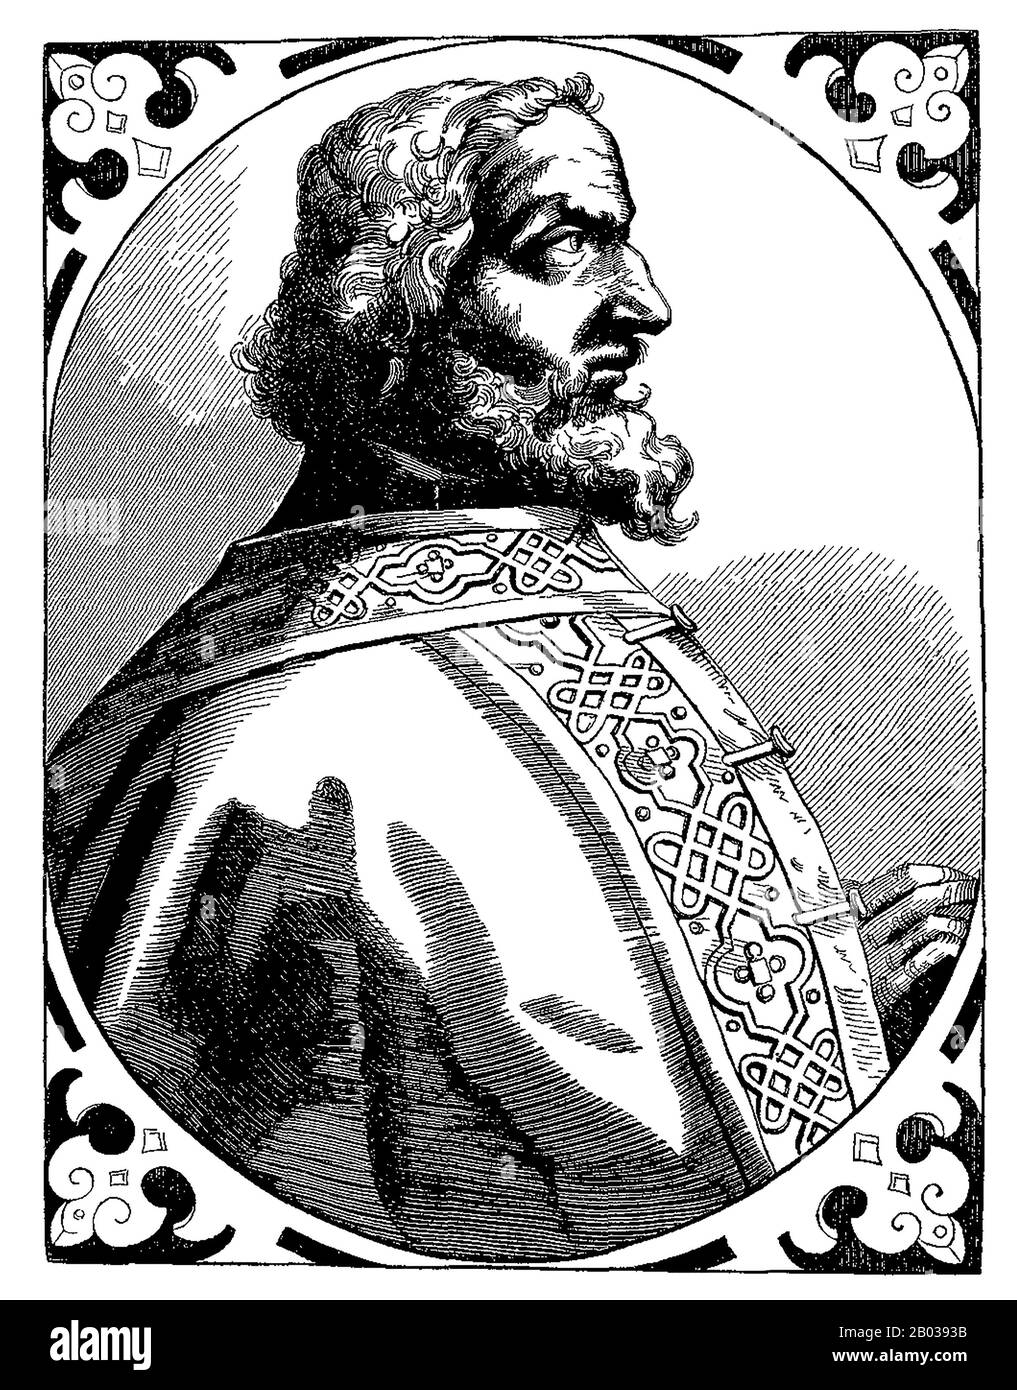 Carlo Magno (742/747/748-814), conosciuto anche come Carlo il Grande o Carlo i era il figlio maggiore del Re dei Franchi, Pepin Il Corto. Prese il trono dei Franchi dopo la morte del padre nel 768, inizialmente coreglando con il fratello Carloman i, morto nel 771, lasciando Carlo Magno come indiscusso dominatore dei Franchi. Carlo Magno si considerò un protettore del papato, e invase l'Italia settentrionale per rimuovere i Longobardi dal potere, diventando Re d'Italia nel 774. Guidò inoltre incursioni nella Spagna musulmana e si batté contro i Sassoni dell'est, cristianizzandoli sulla pena di morte Foto Stock